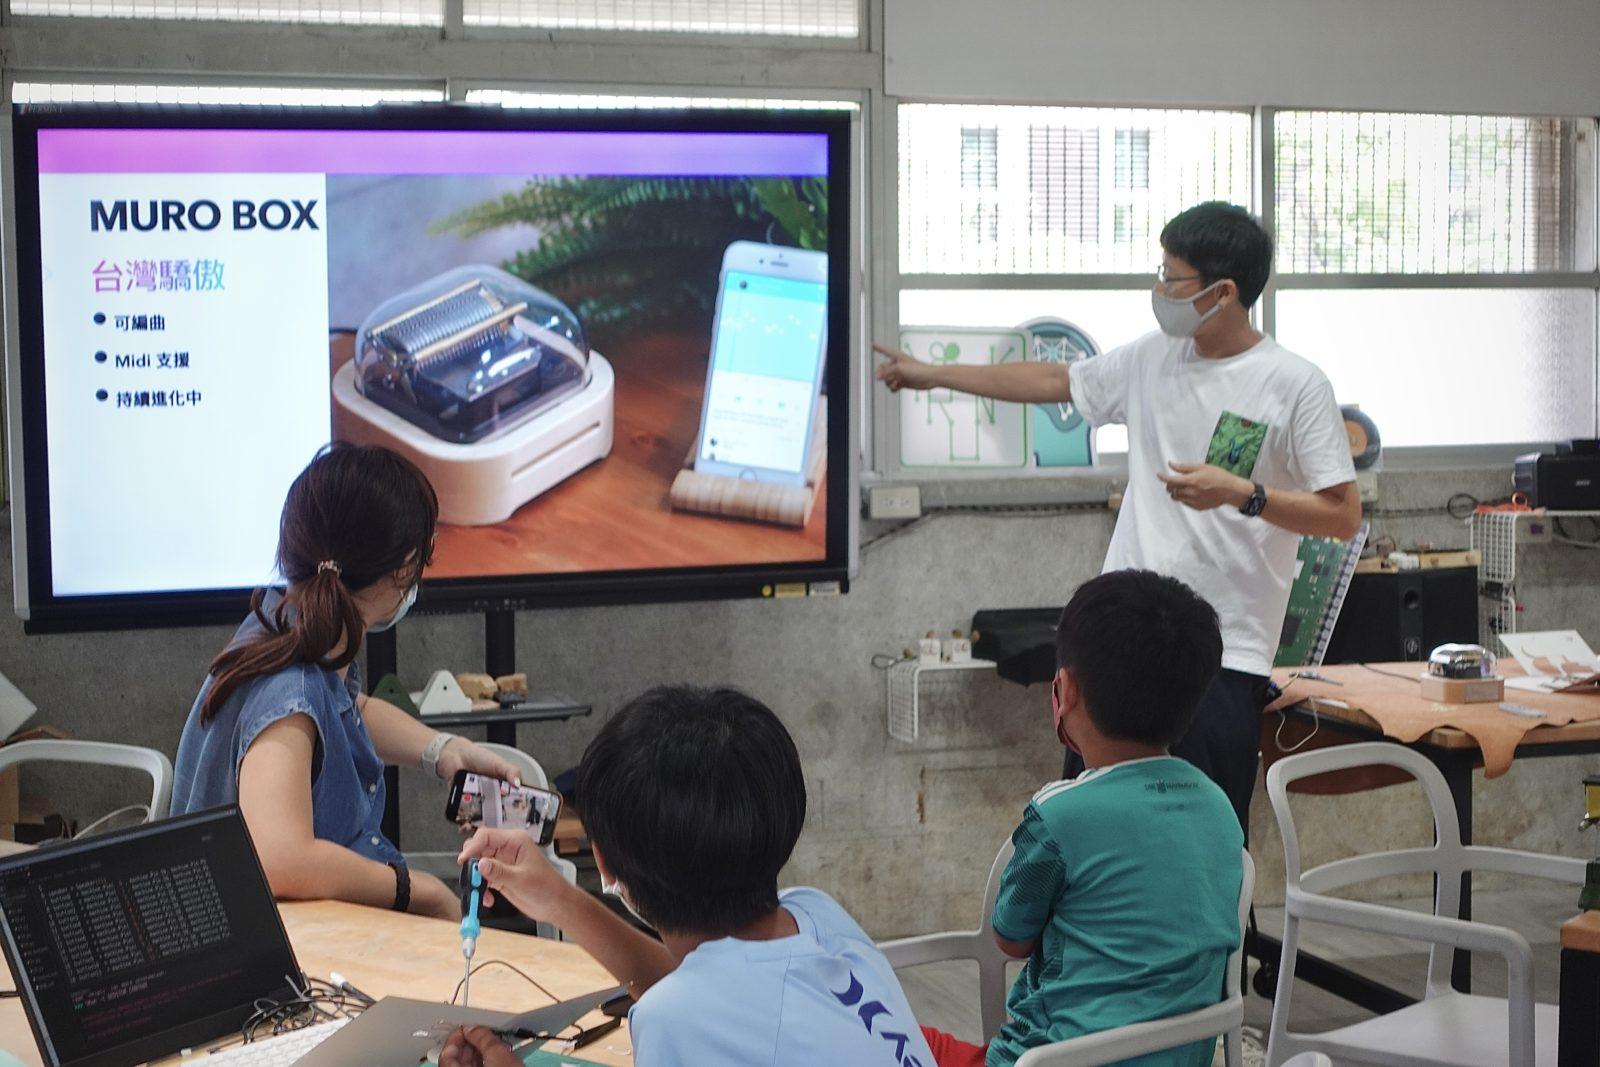 王老師在上課中介紹Muro Box開發歷程，認為這也是任務導向、問題解決的最佳學習範例。